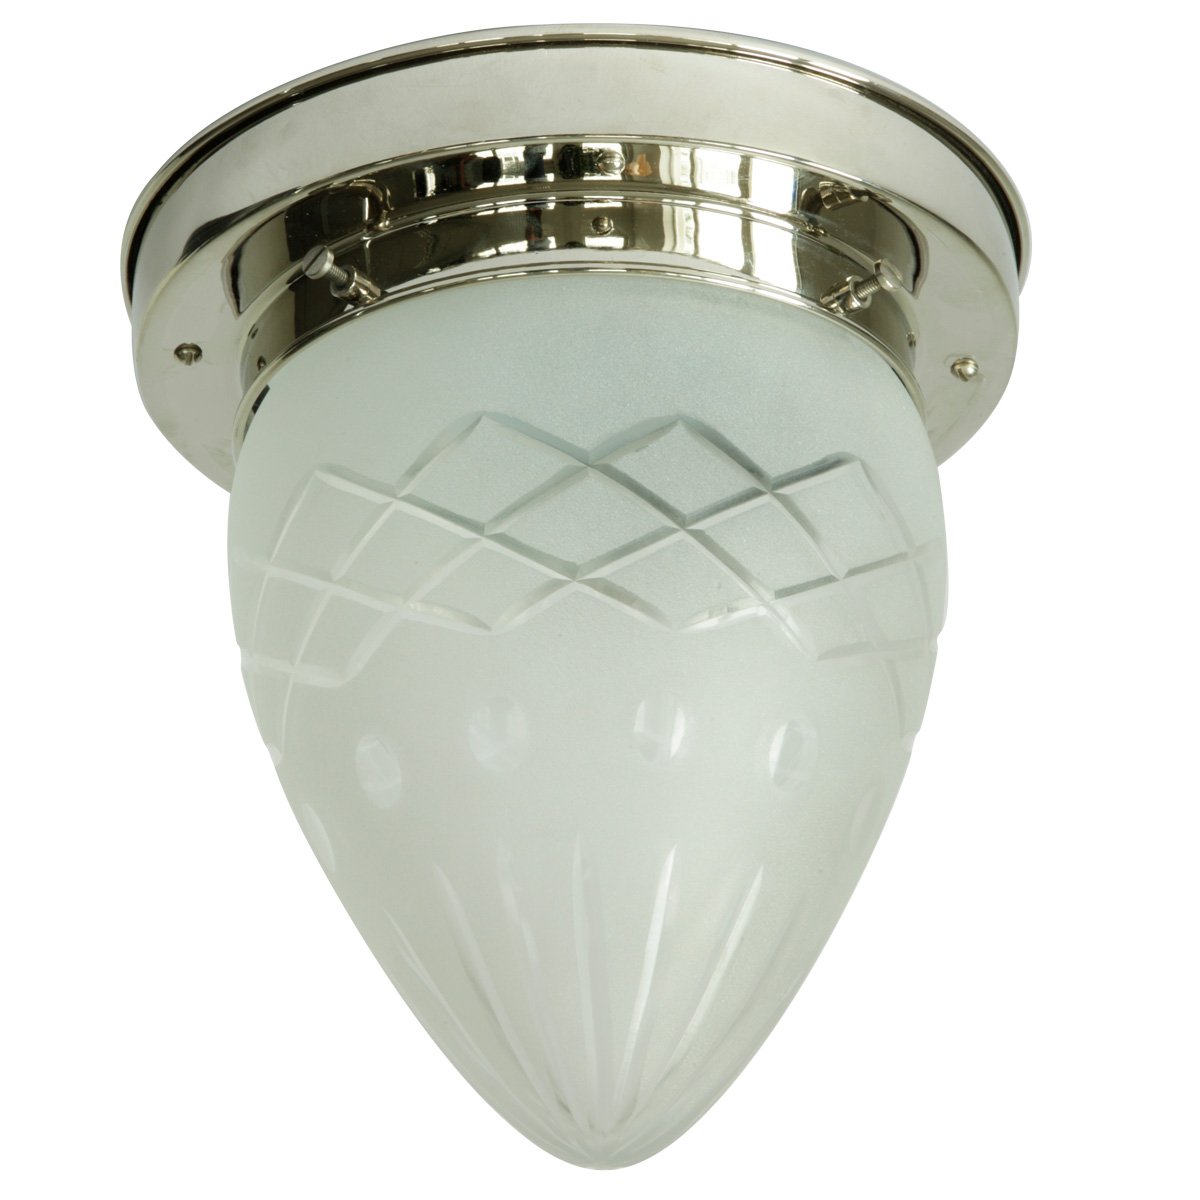 Spitzglas-Deckenlampe mit mehrfach geschliffenem Glas  Ø 21 cm: Deckenleuchte, abgebildet mit glanzvernickeltem Deckenteil